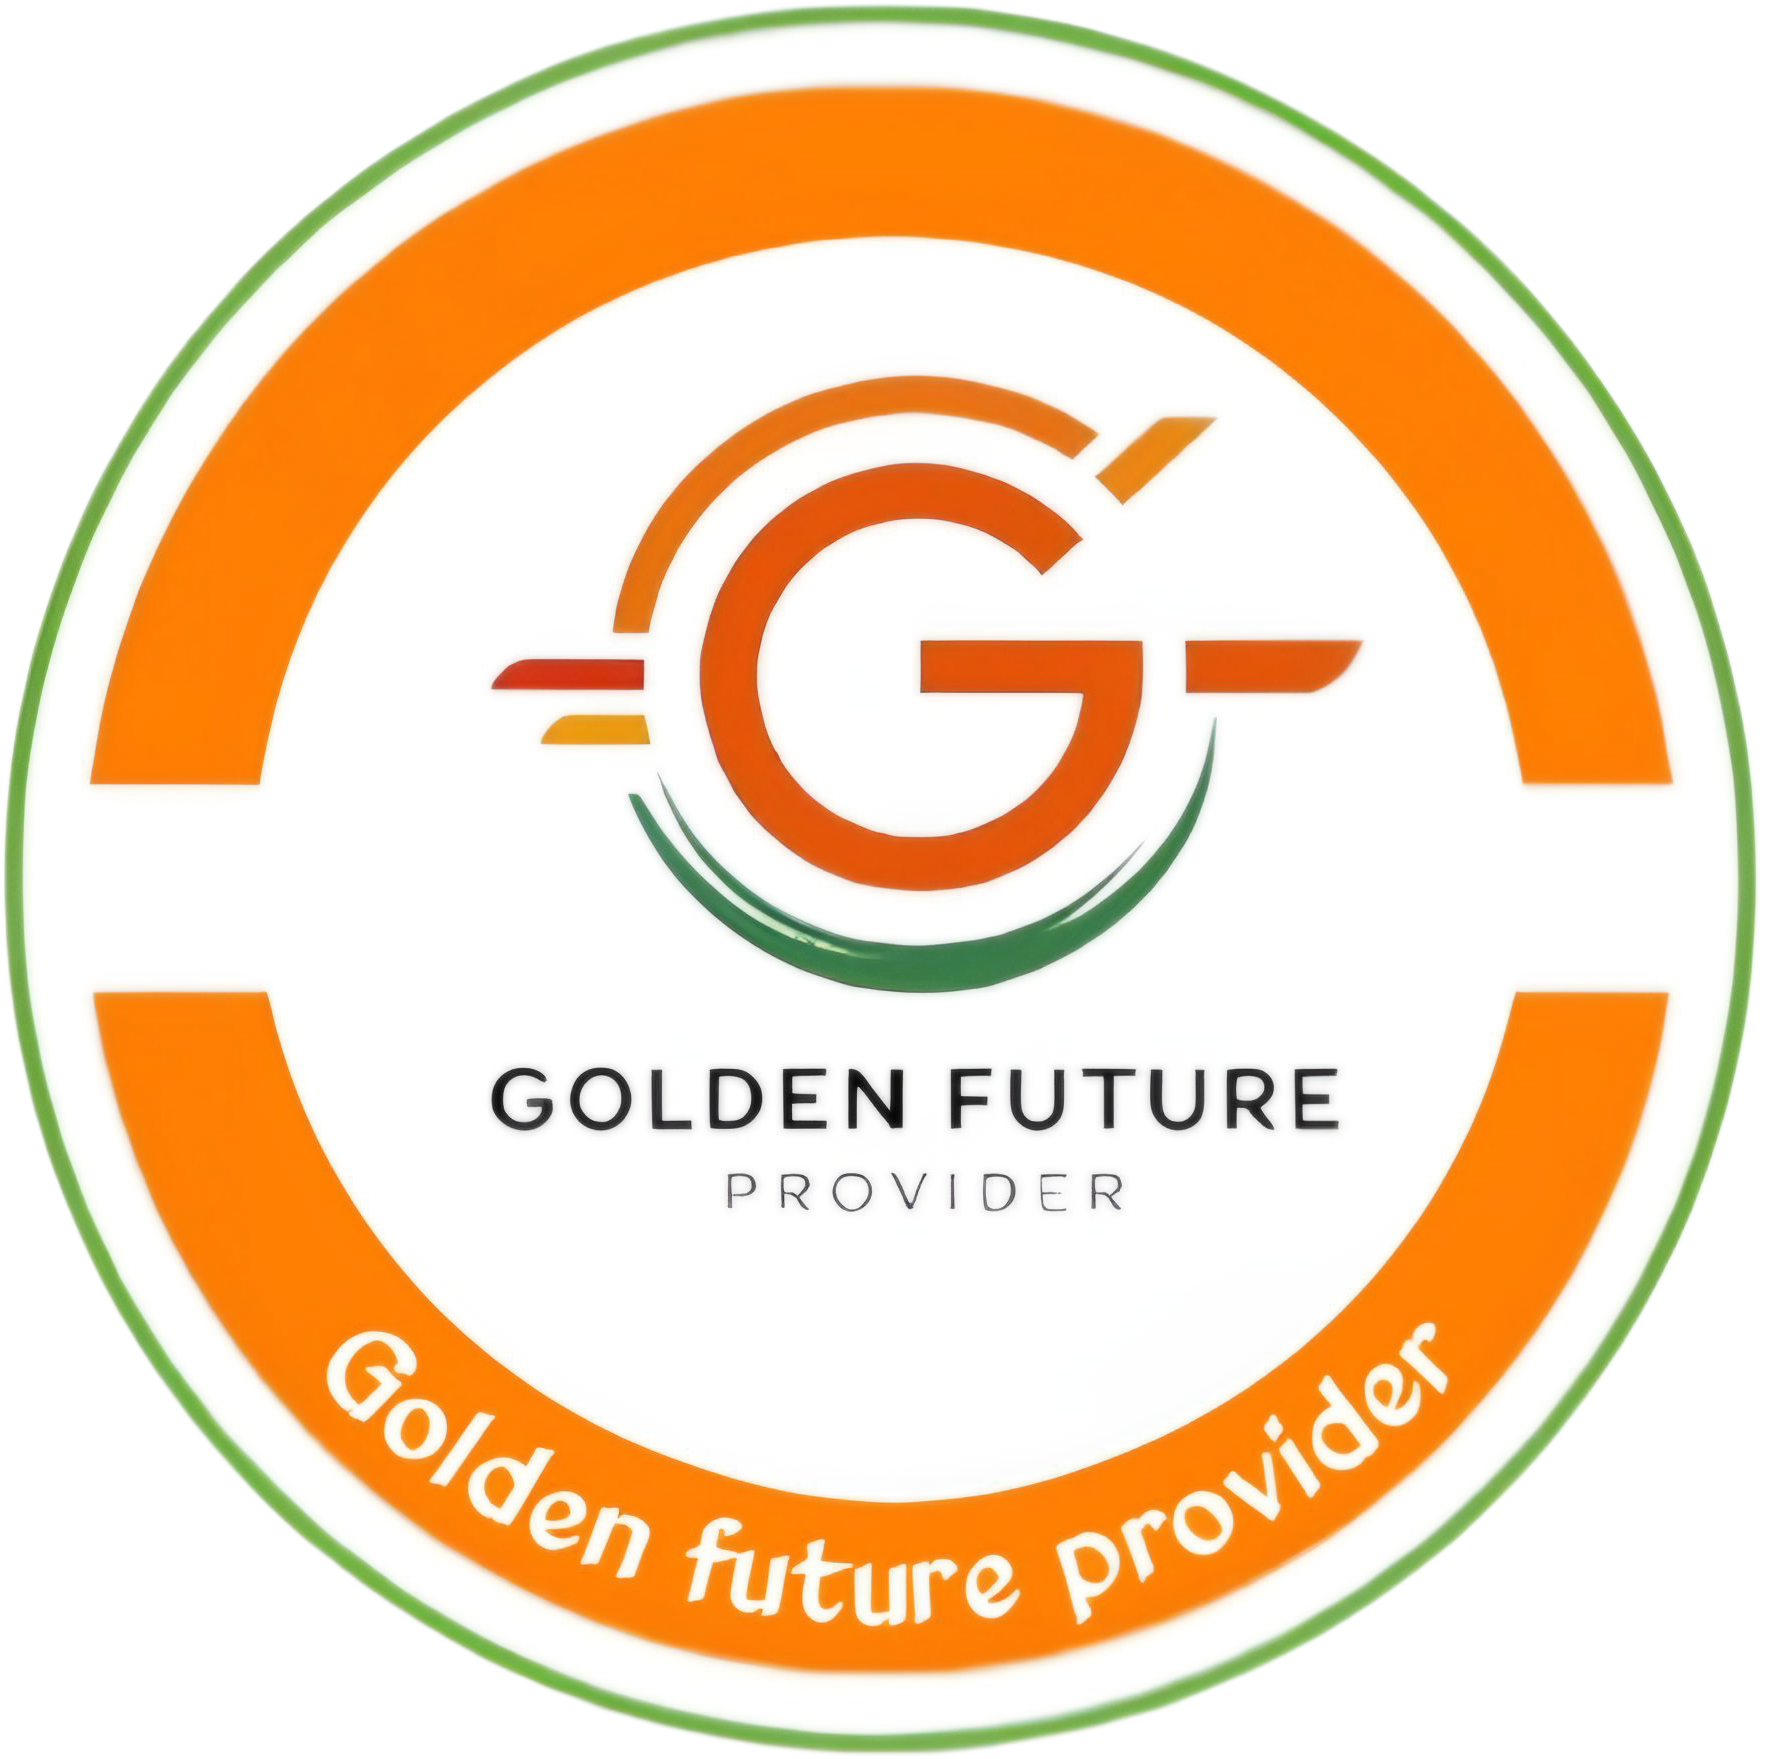 Golden Future Provider